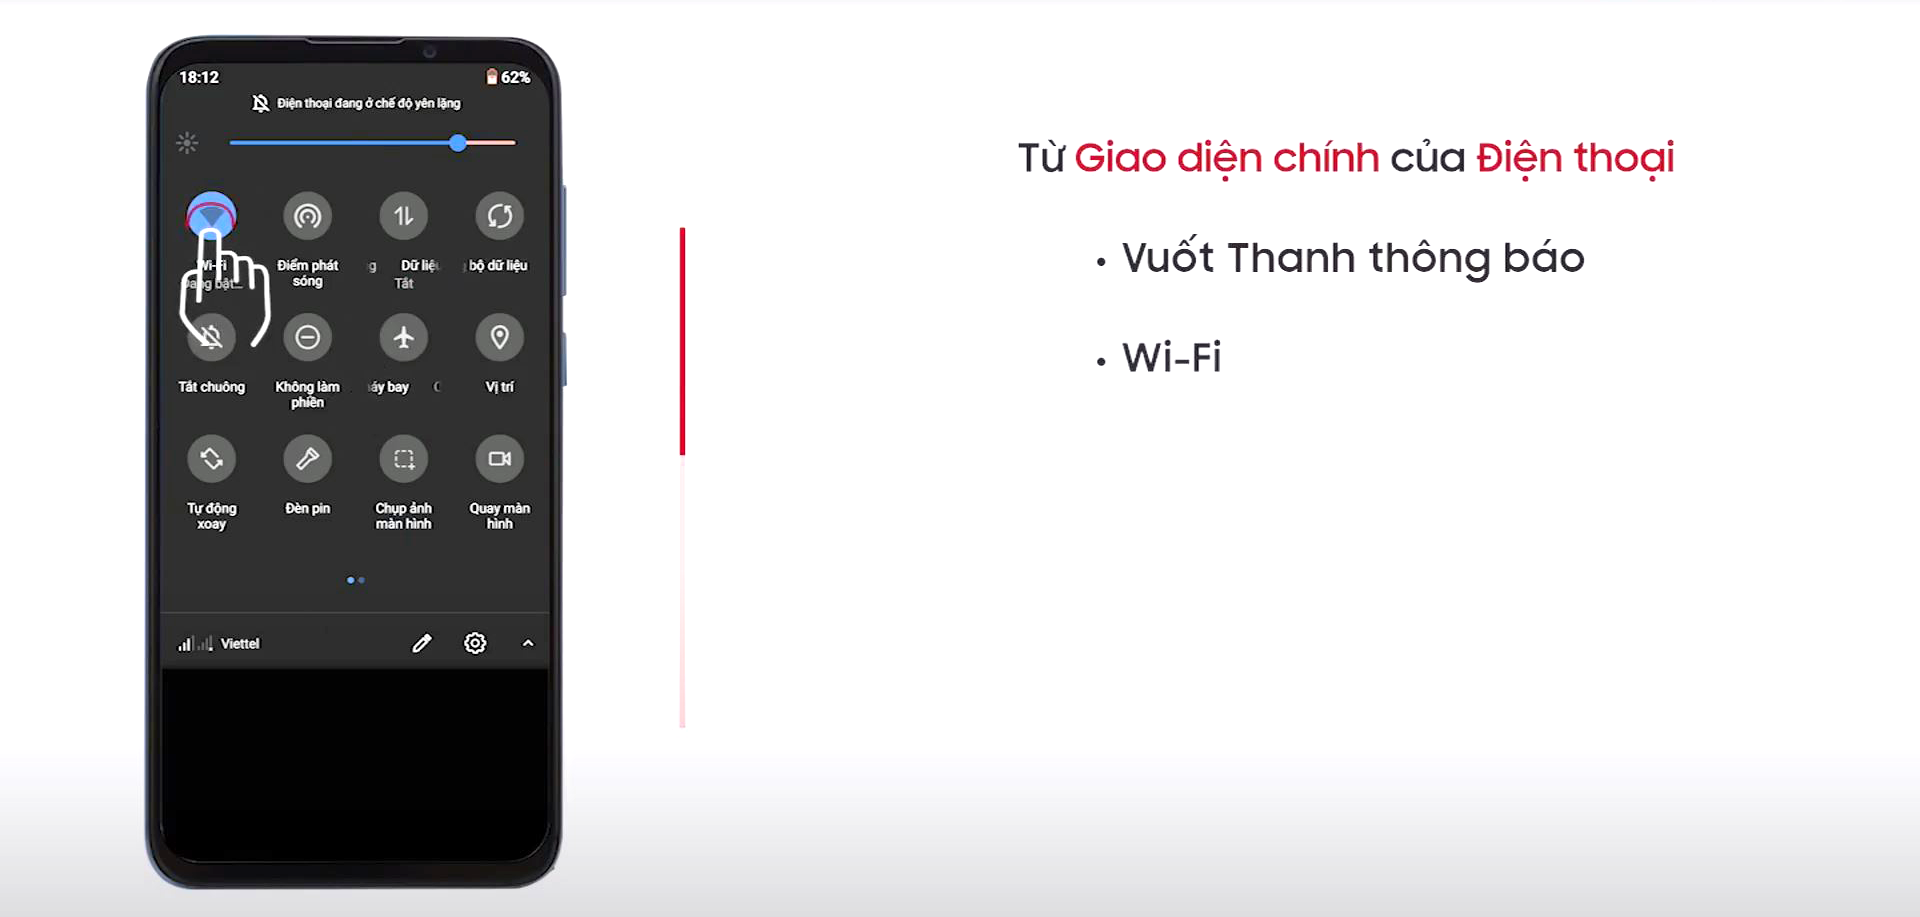 Kết nối wifi trên điện thoại từ mạng wifi của màn hình GOTECH